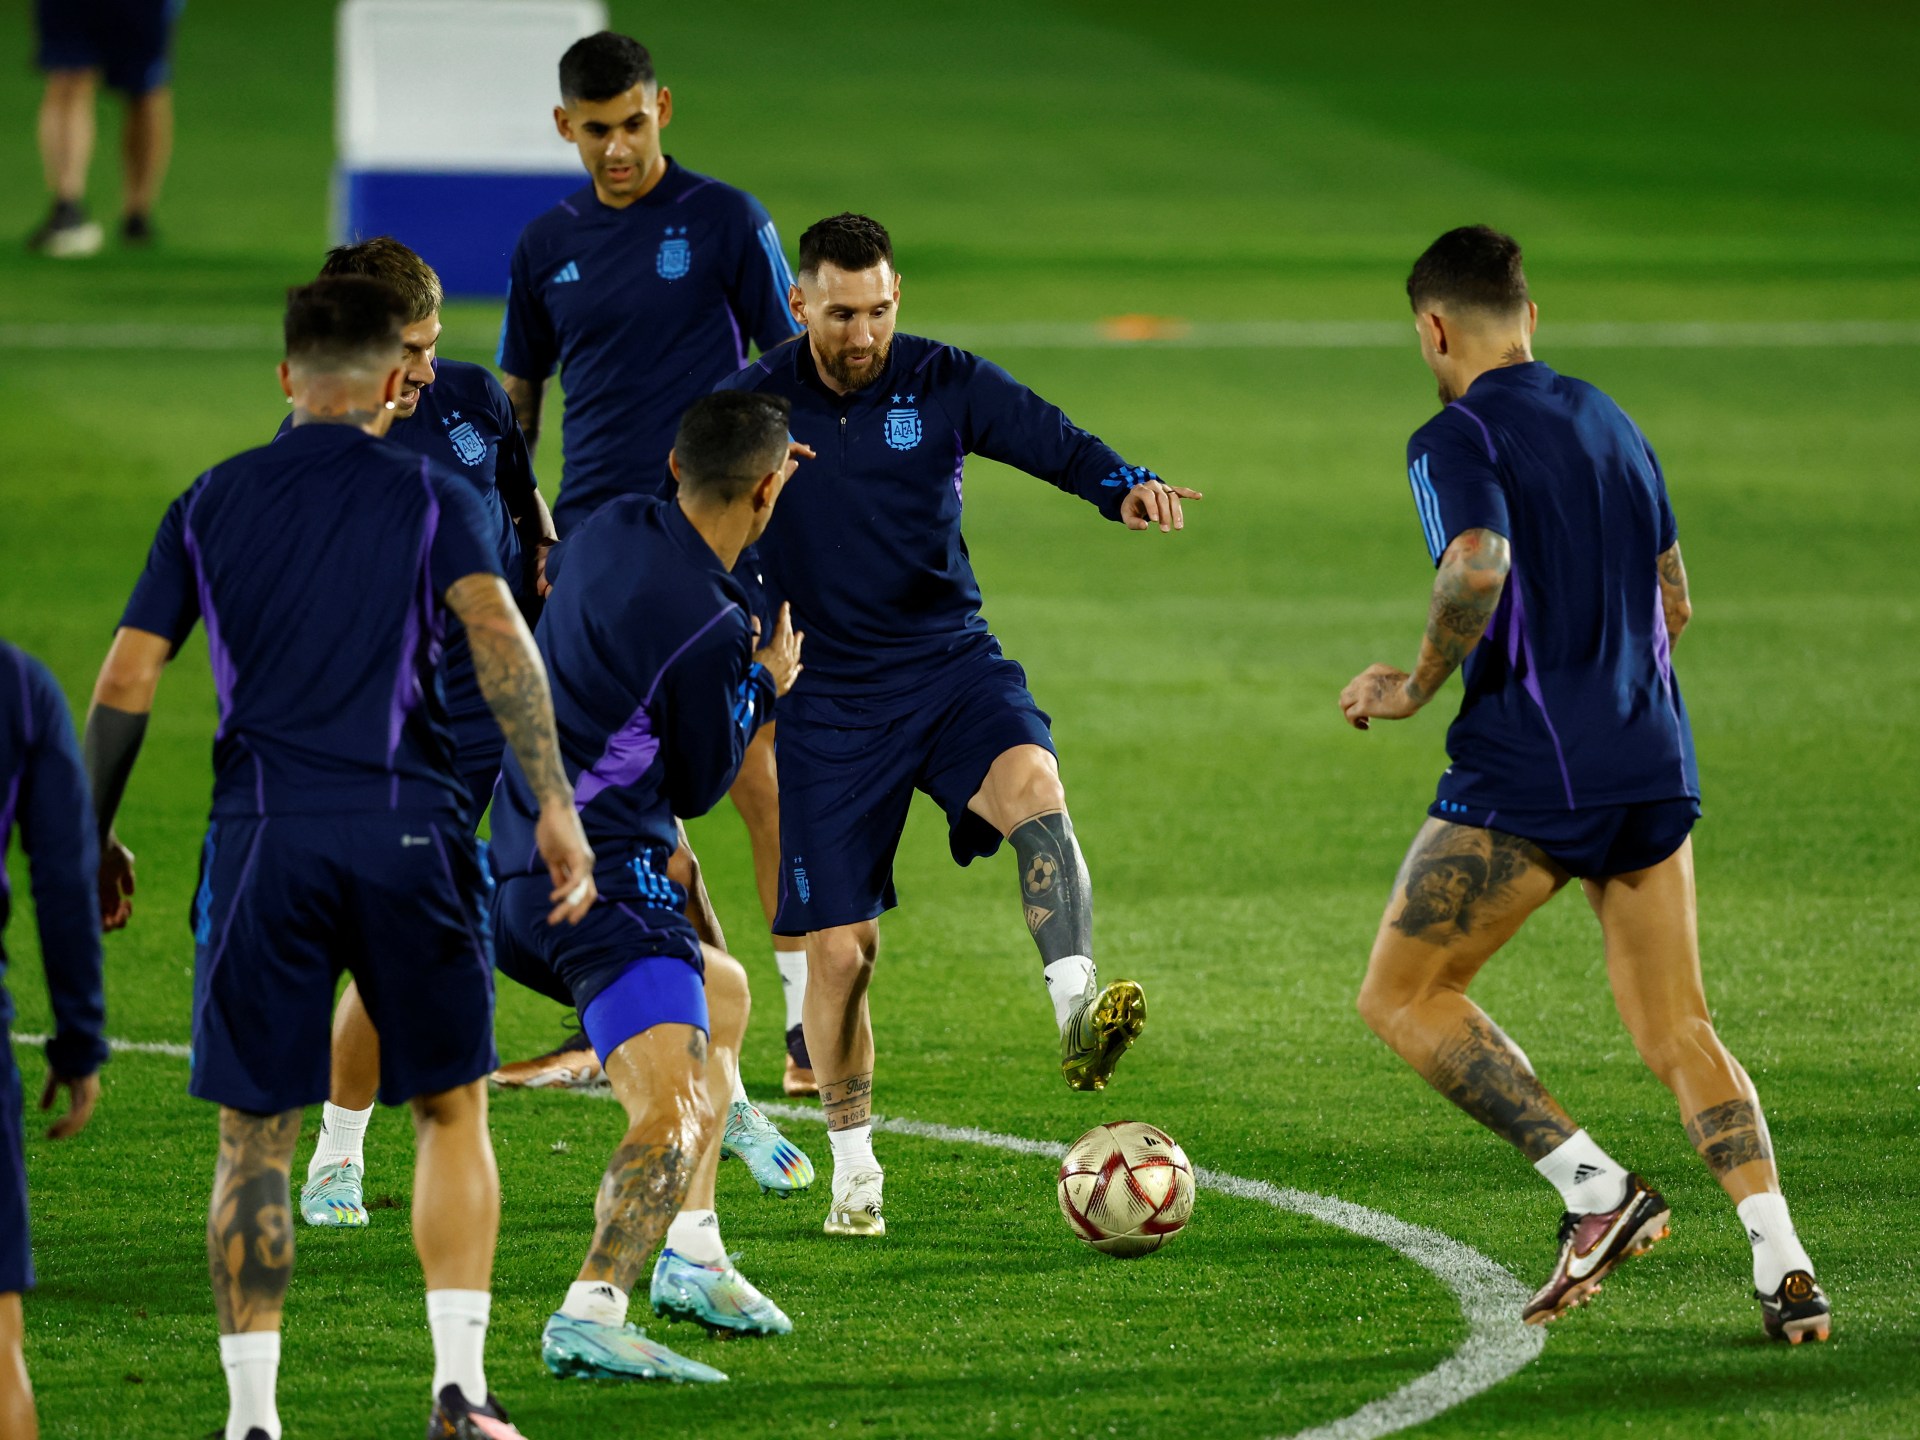 Todos los ojos puestos en Messi en el entrenamiento de Argentina antes del choque con Croacia |  Copa del Mundo Qatar 2022 Noticias